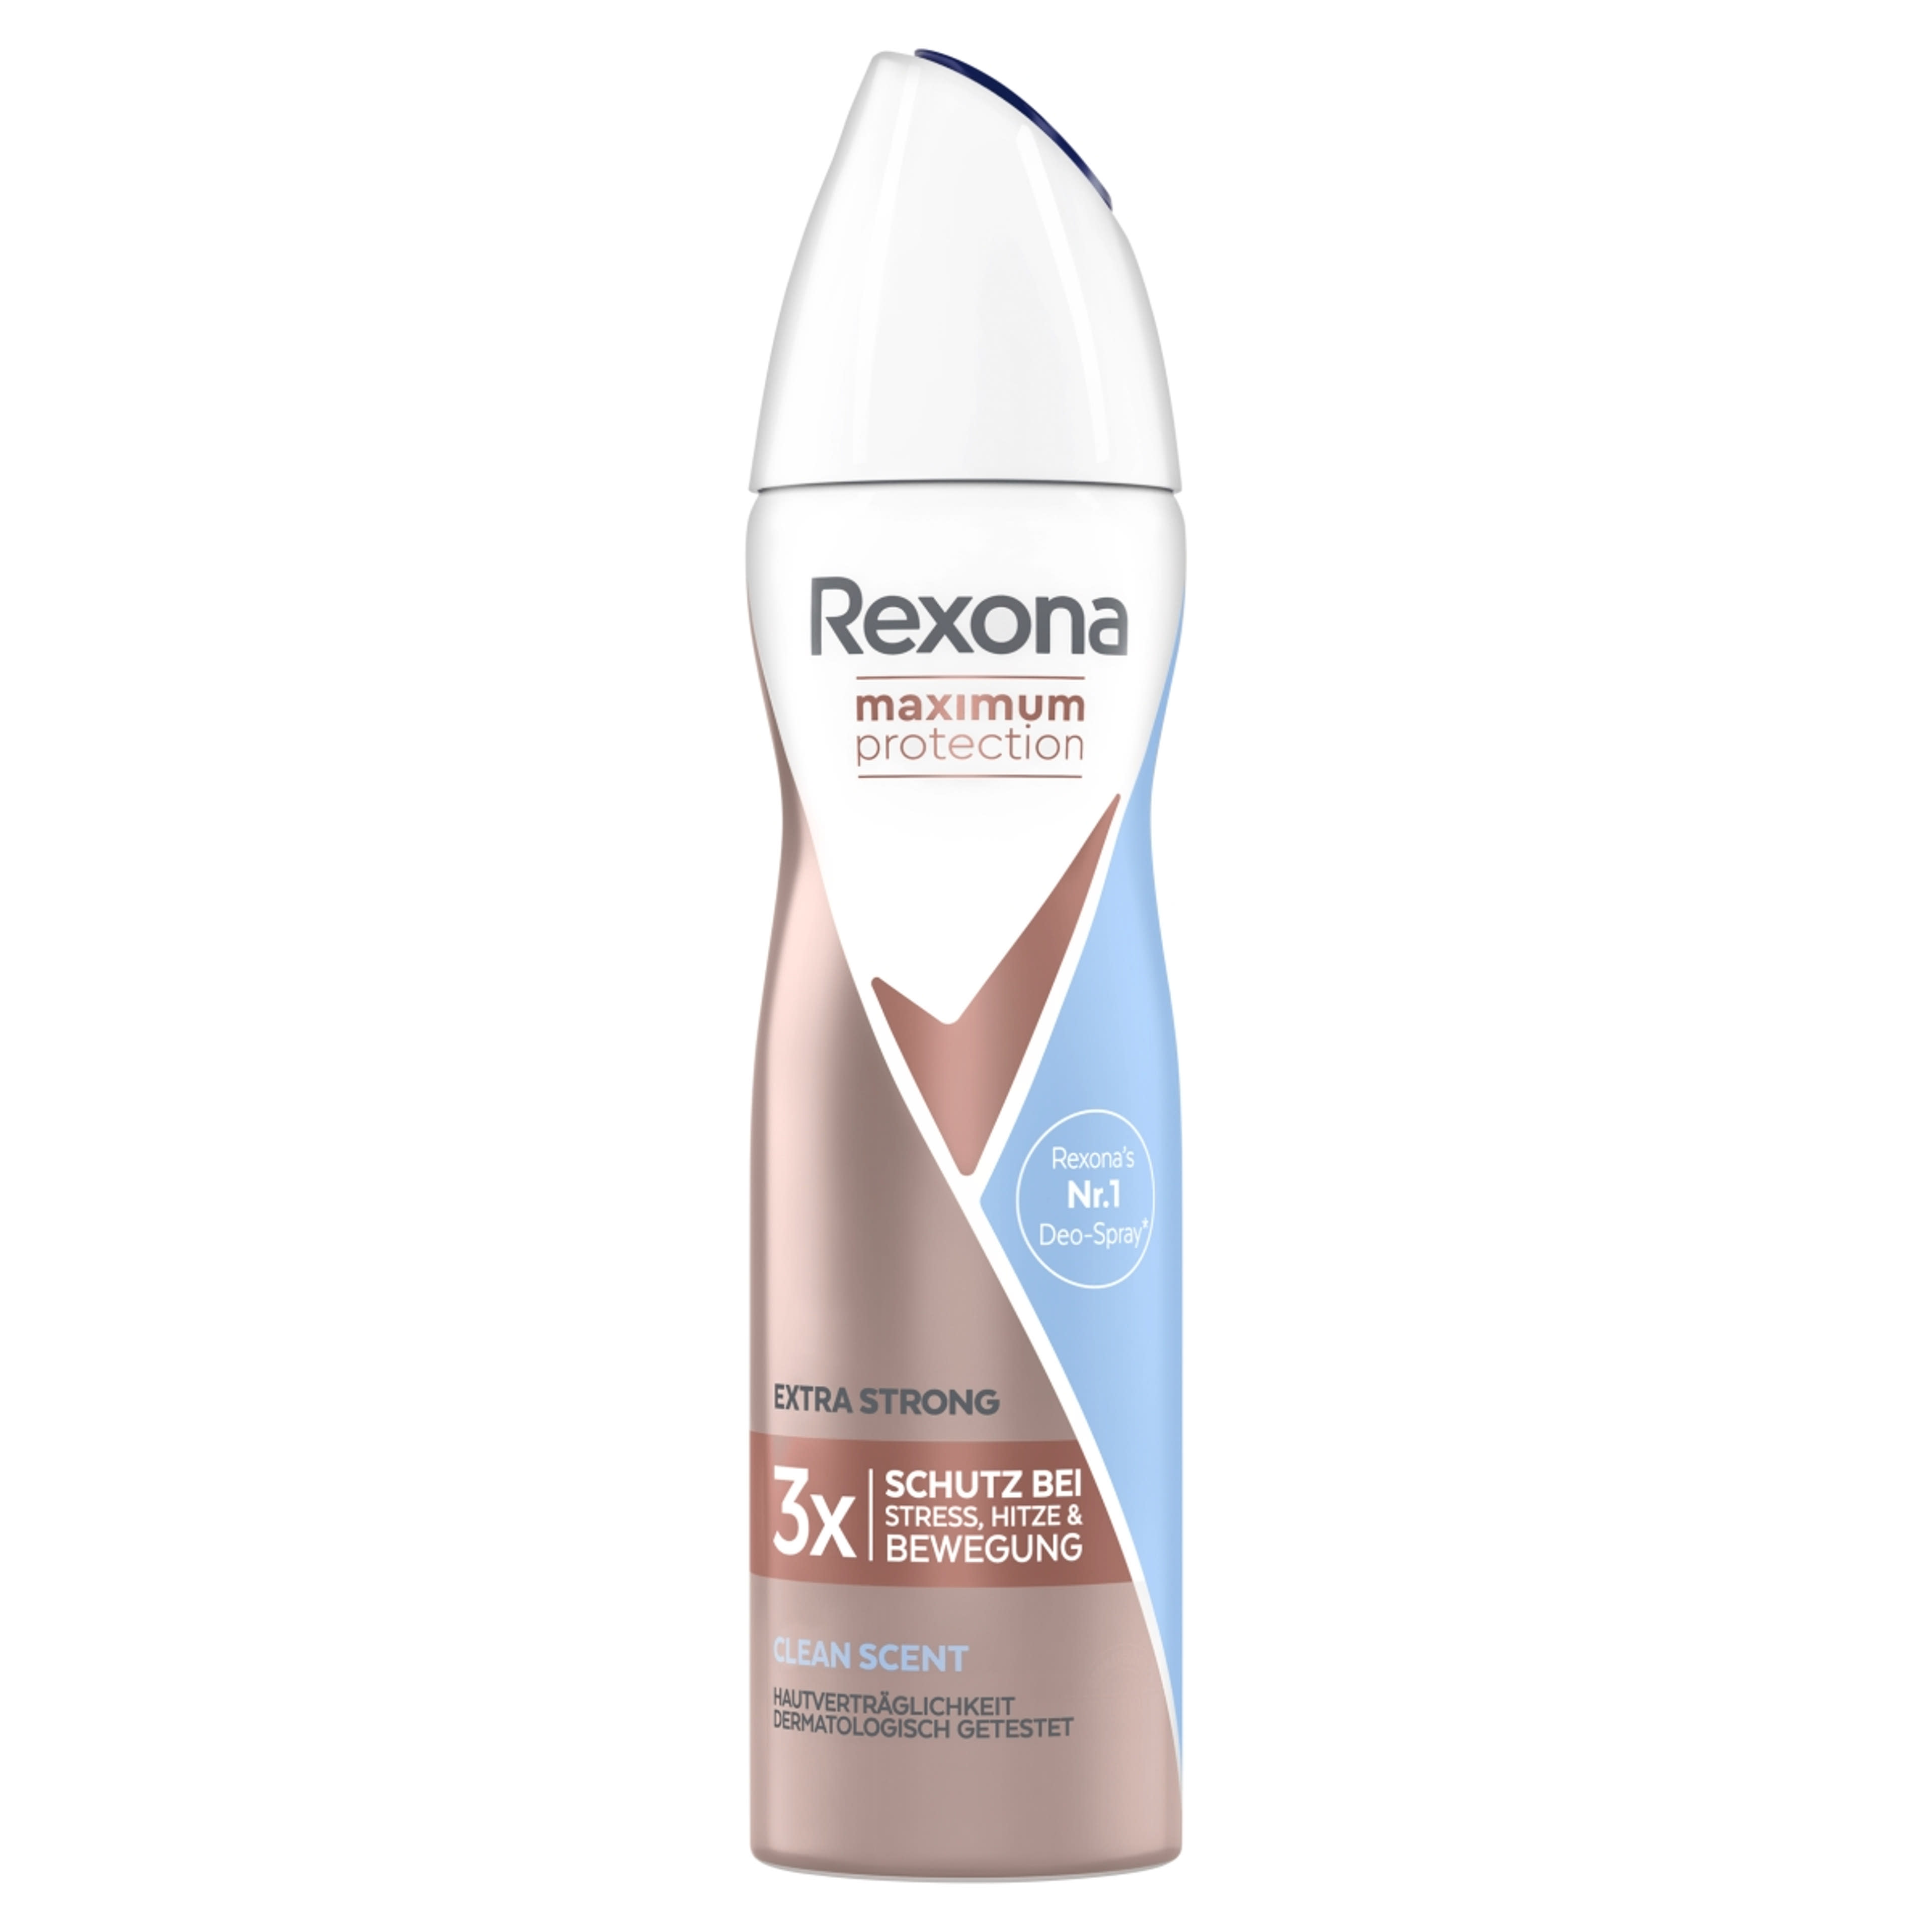 Rexona Maximum Protection Clean Scent dezodor - 150 ml